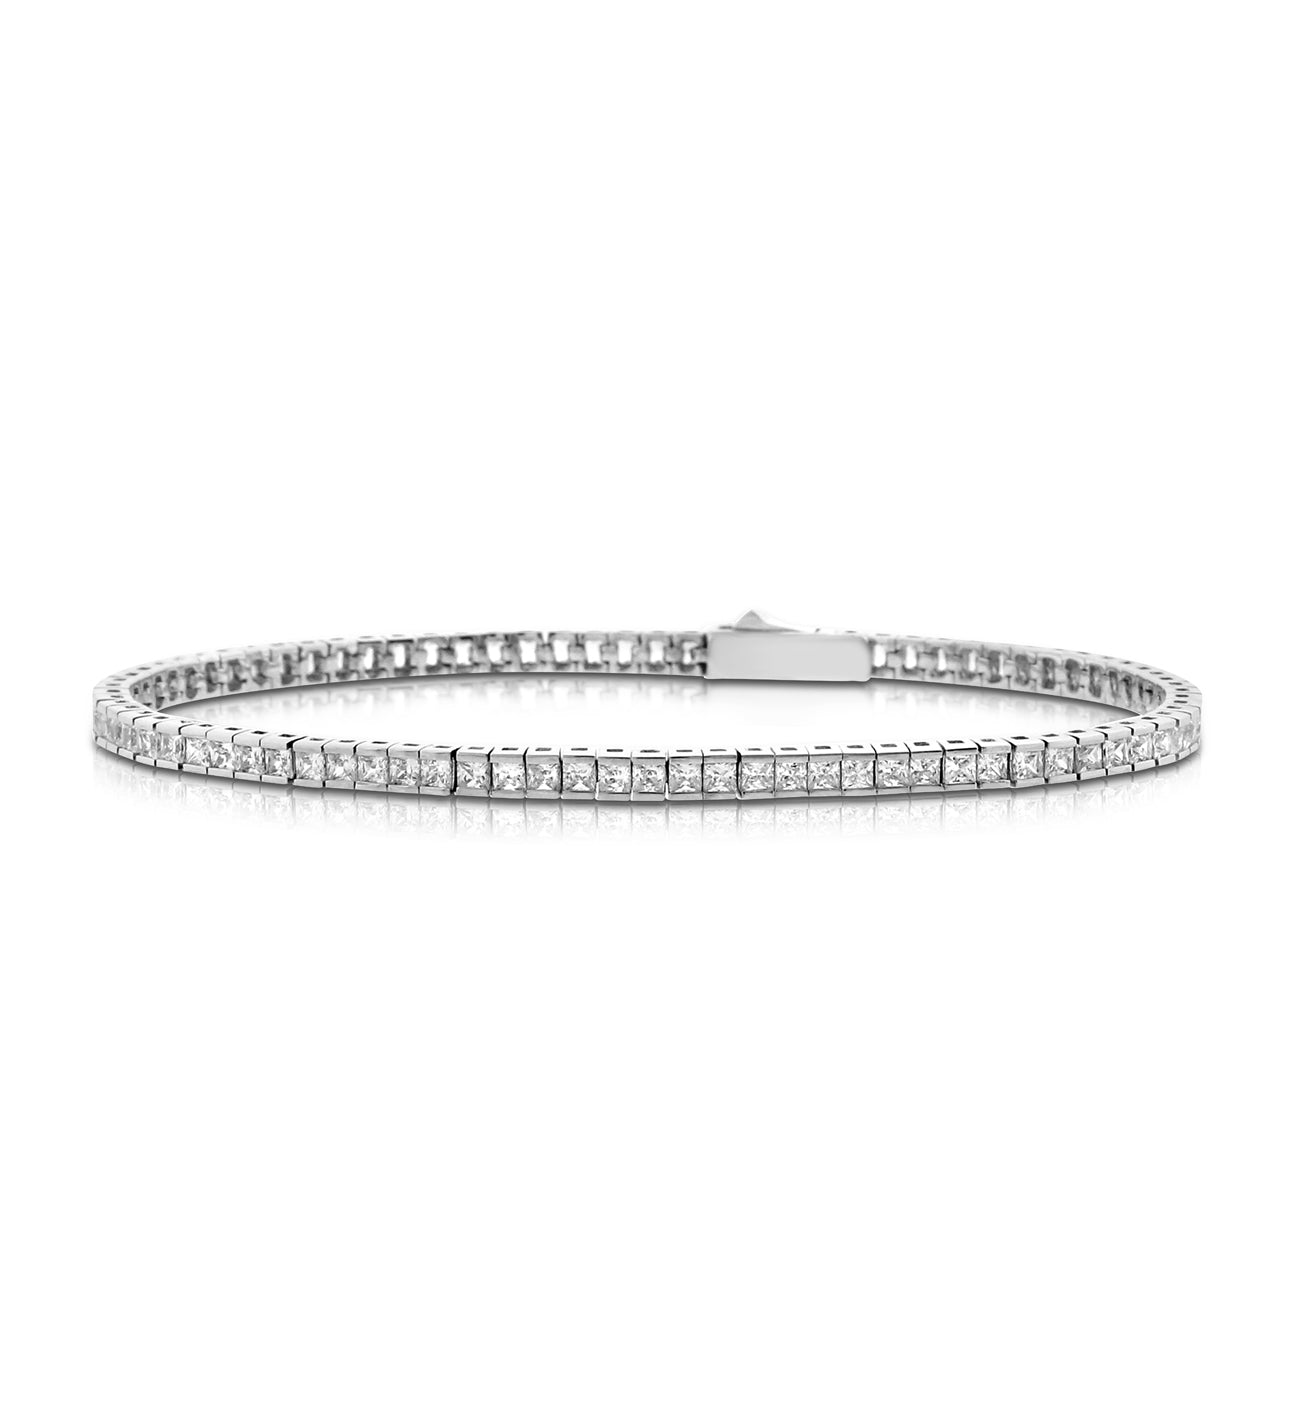 Delicate Channel-set princess cut silver tennis bracelet